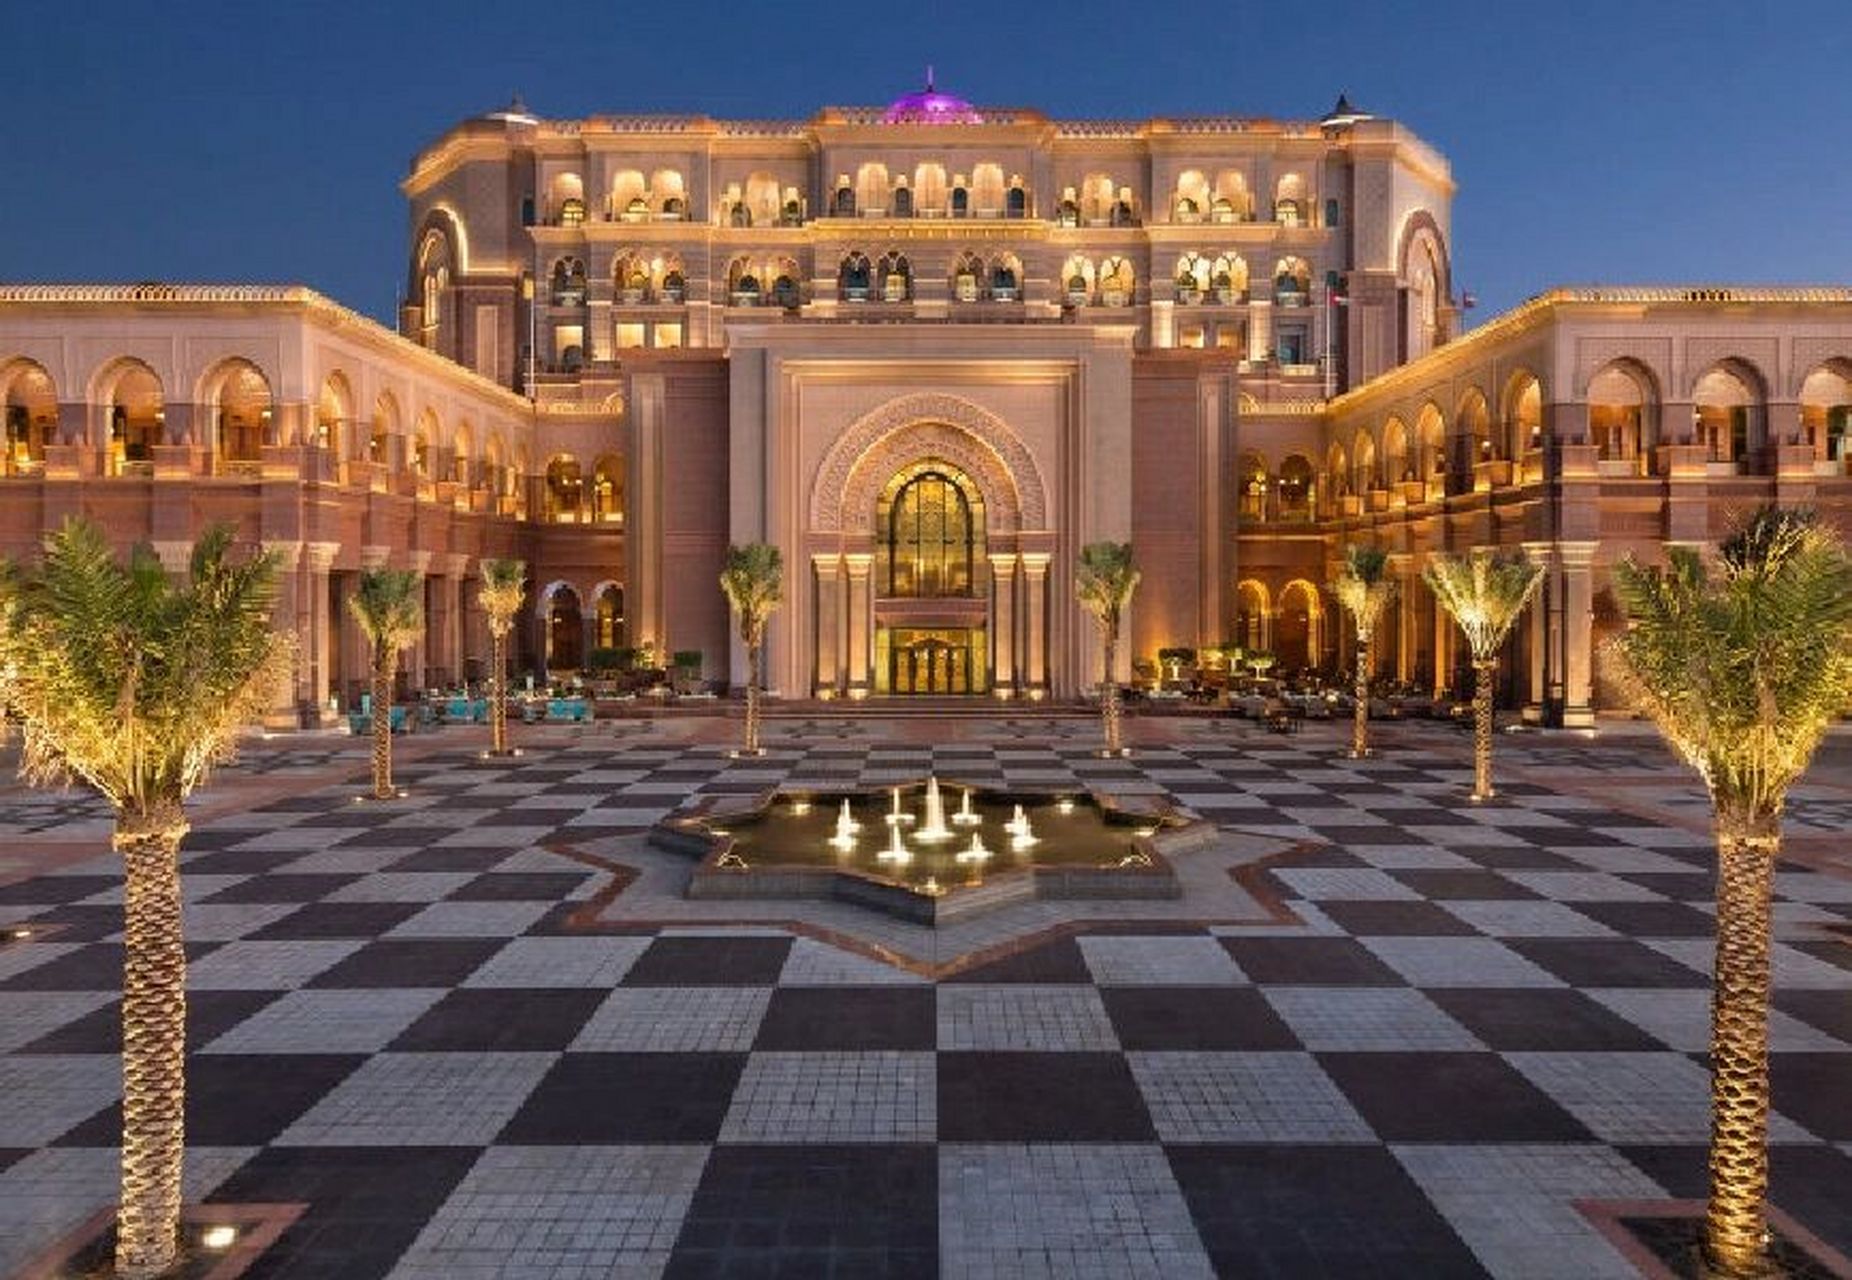 阿布扎比八星皇宫酒店 阿布扎比八星皇宫酒店是迄今为止世上唯一的八